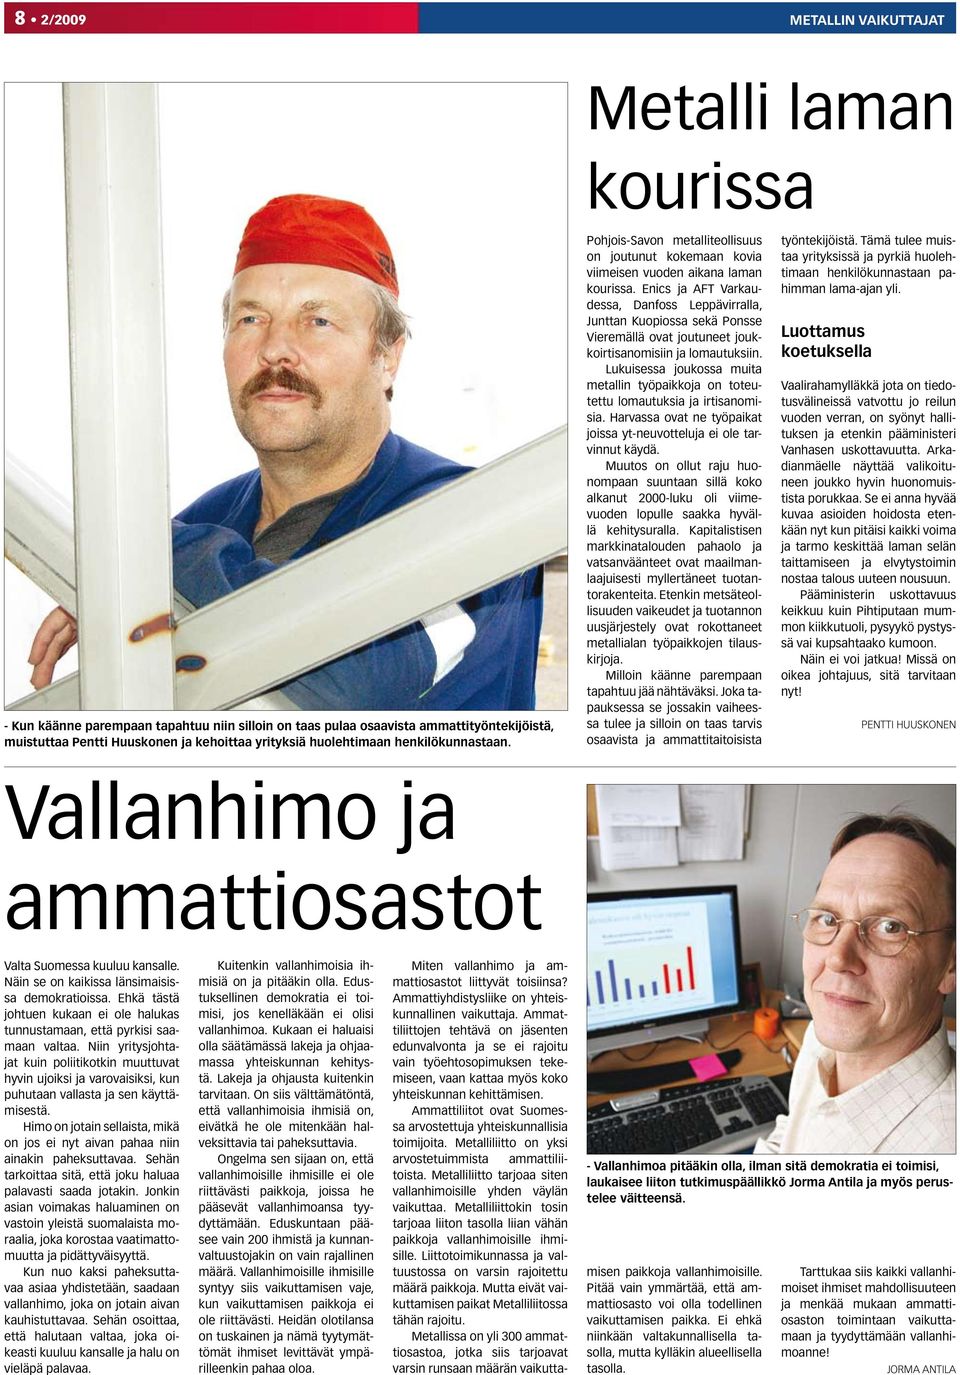 Enics ja AFT Varkaudessa, Danfoss Leppävirralla, Junttan Kuopiossa sekä Ponsse Vieremällä ovat joutuneet joukkoirtisanomisiin ja lomautuksiin.